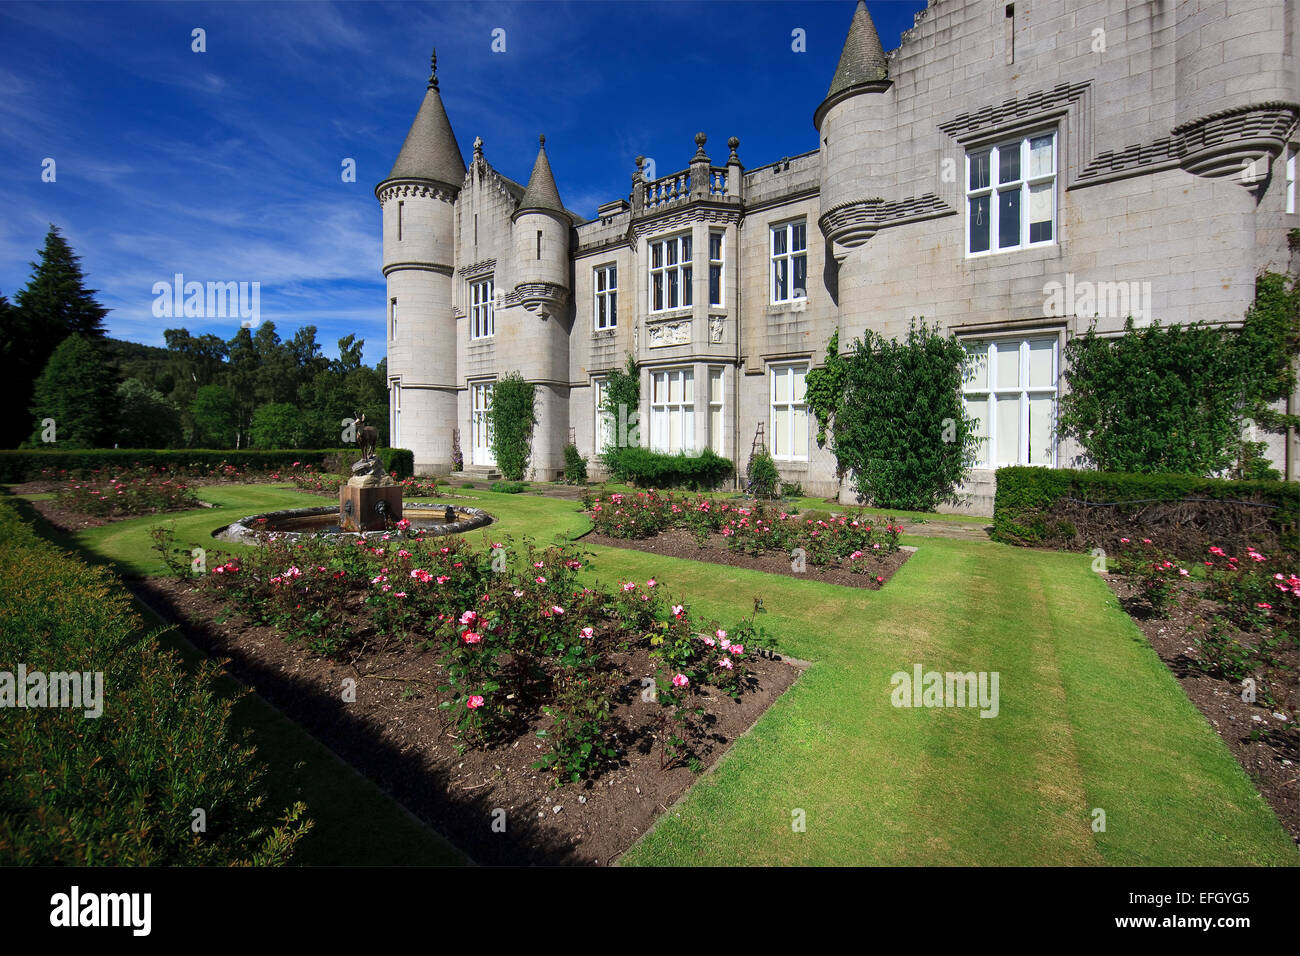 La fachada del castillo de Balmoral, visto desde el jardín,Balmoral,royal-deeside,Aberdeenshire Foto de stock